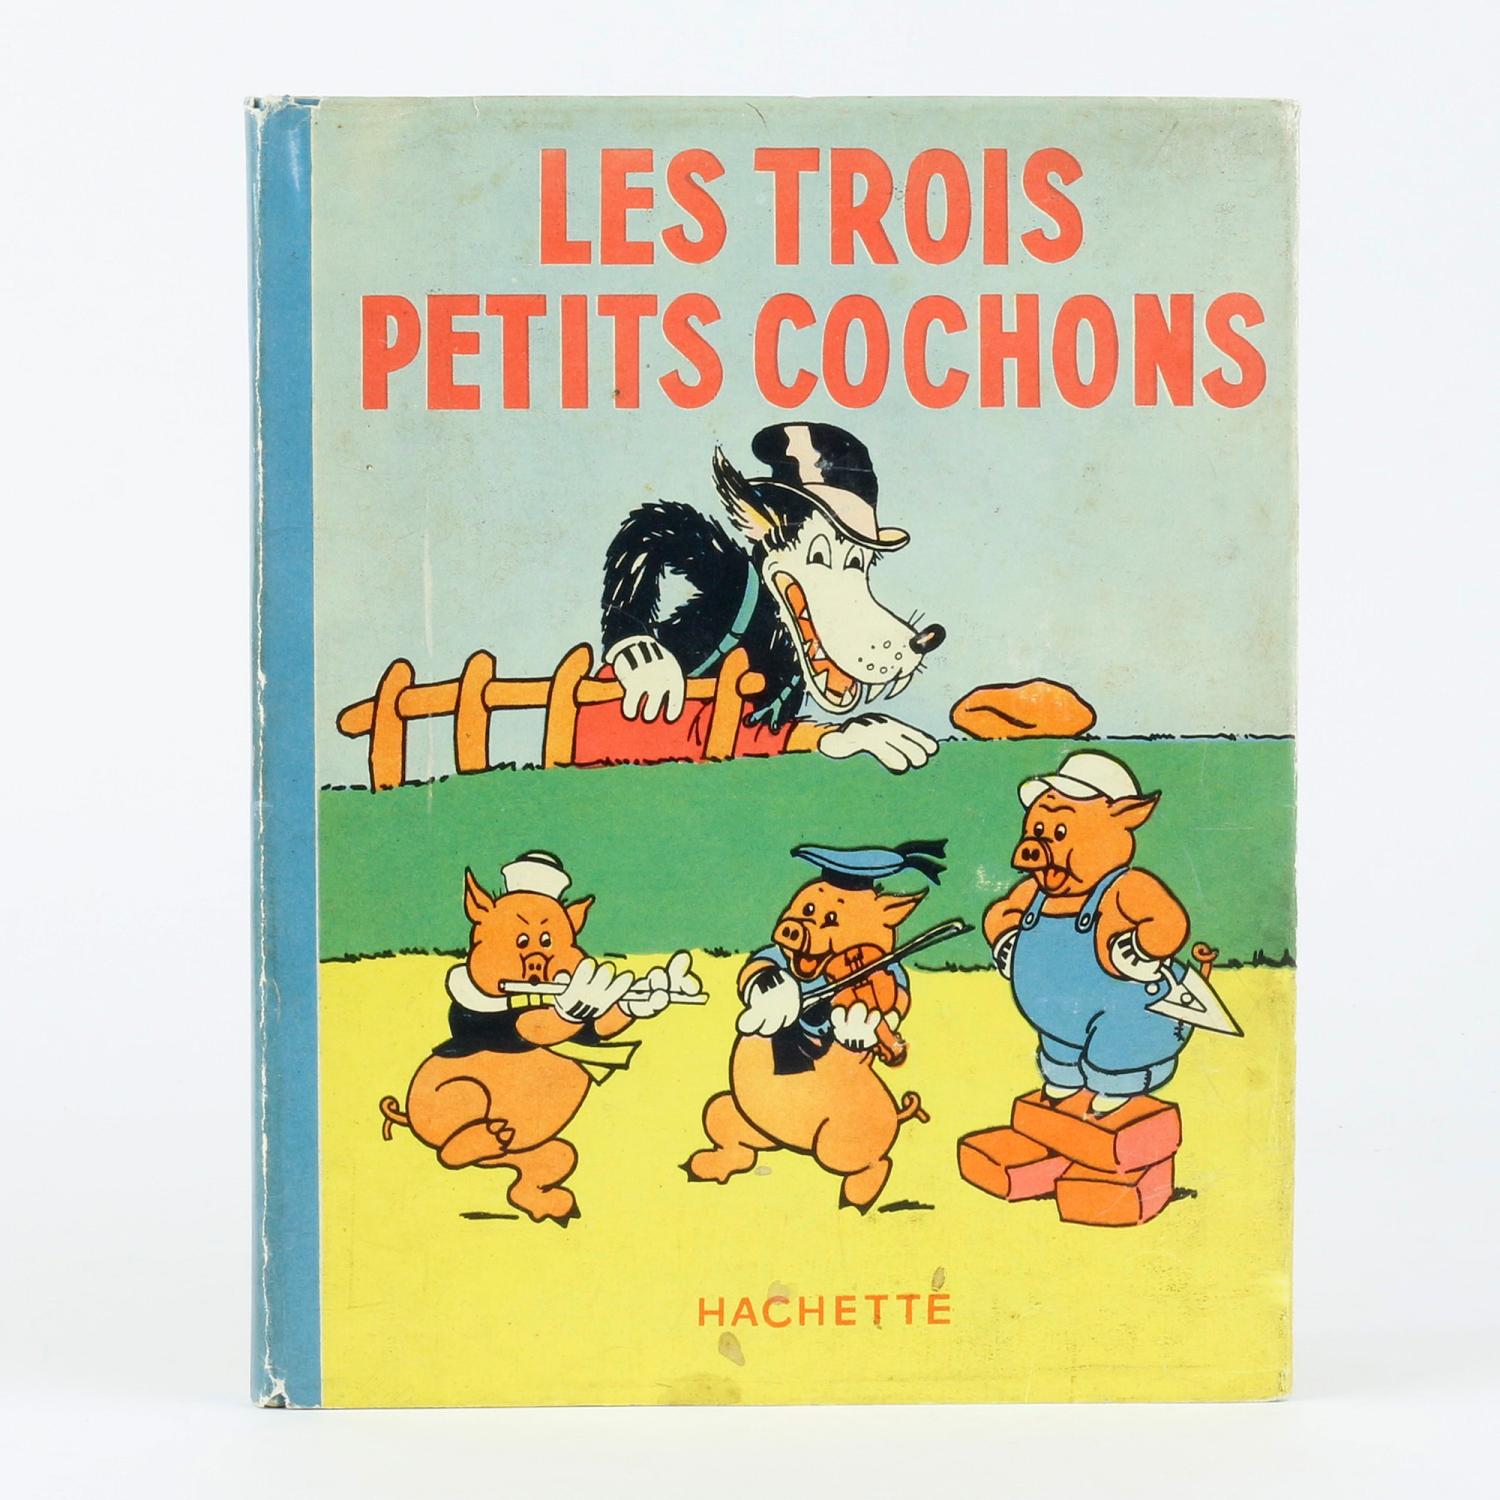 Les trois petits cochons - Livre de Walt Disney